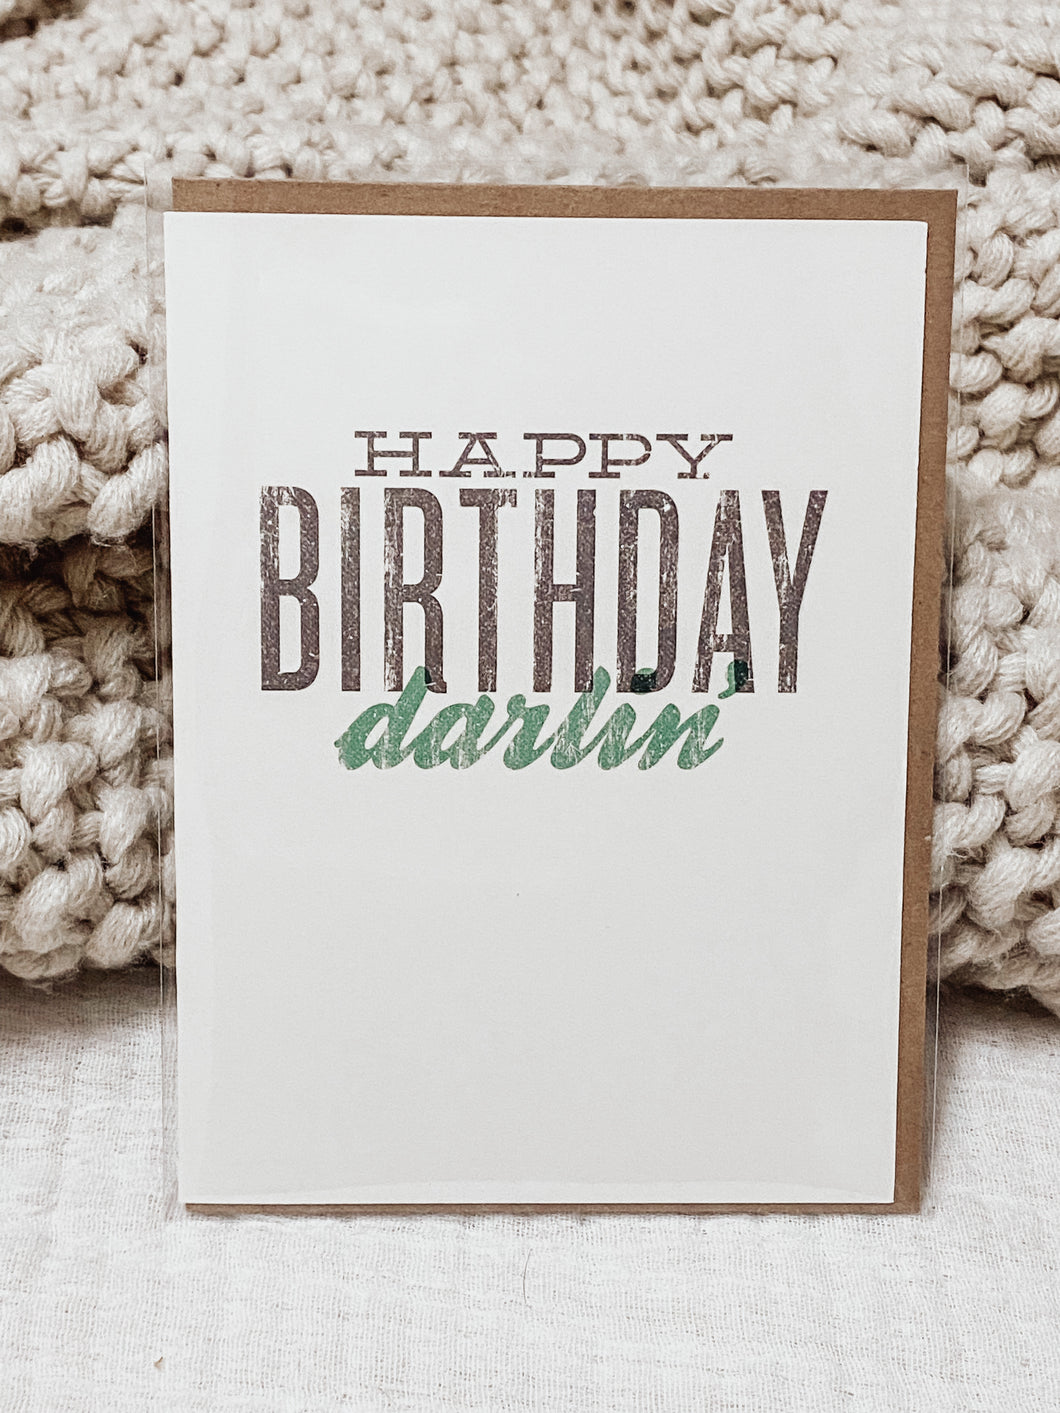 Happy Birthday Darlin’